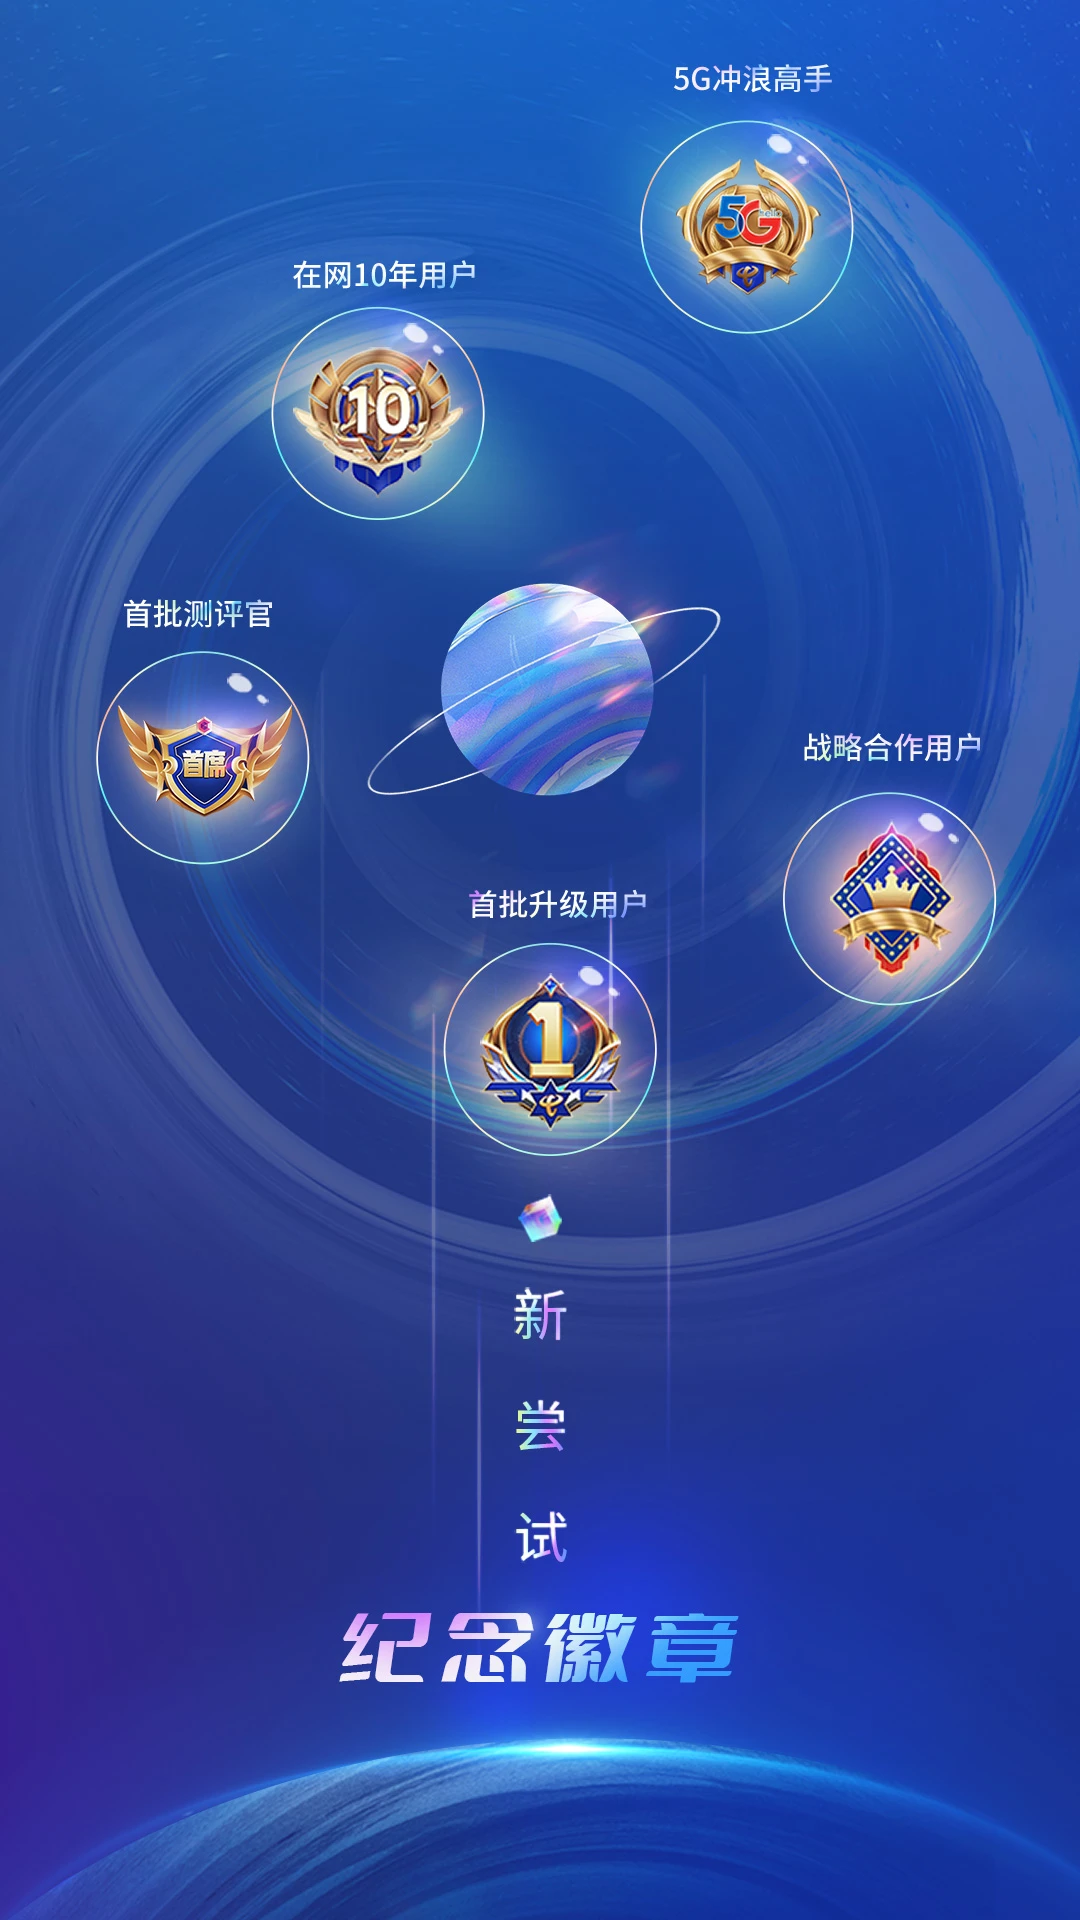 中国电信界面2